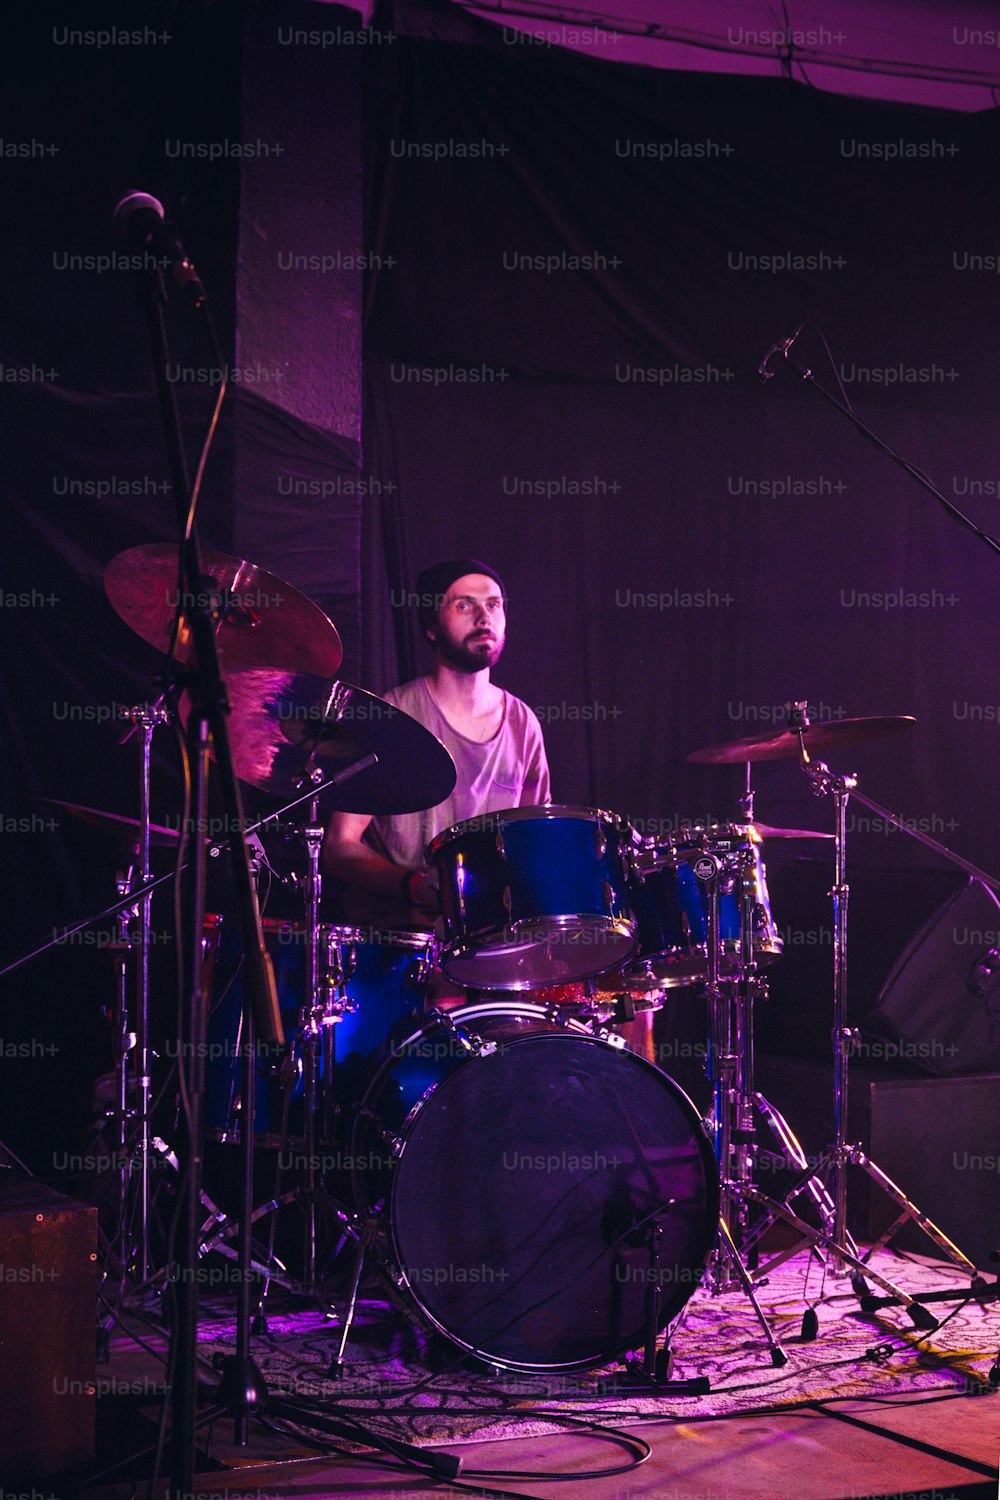 Un homme avec une barbe jouant de la batterie sur scène